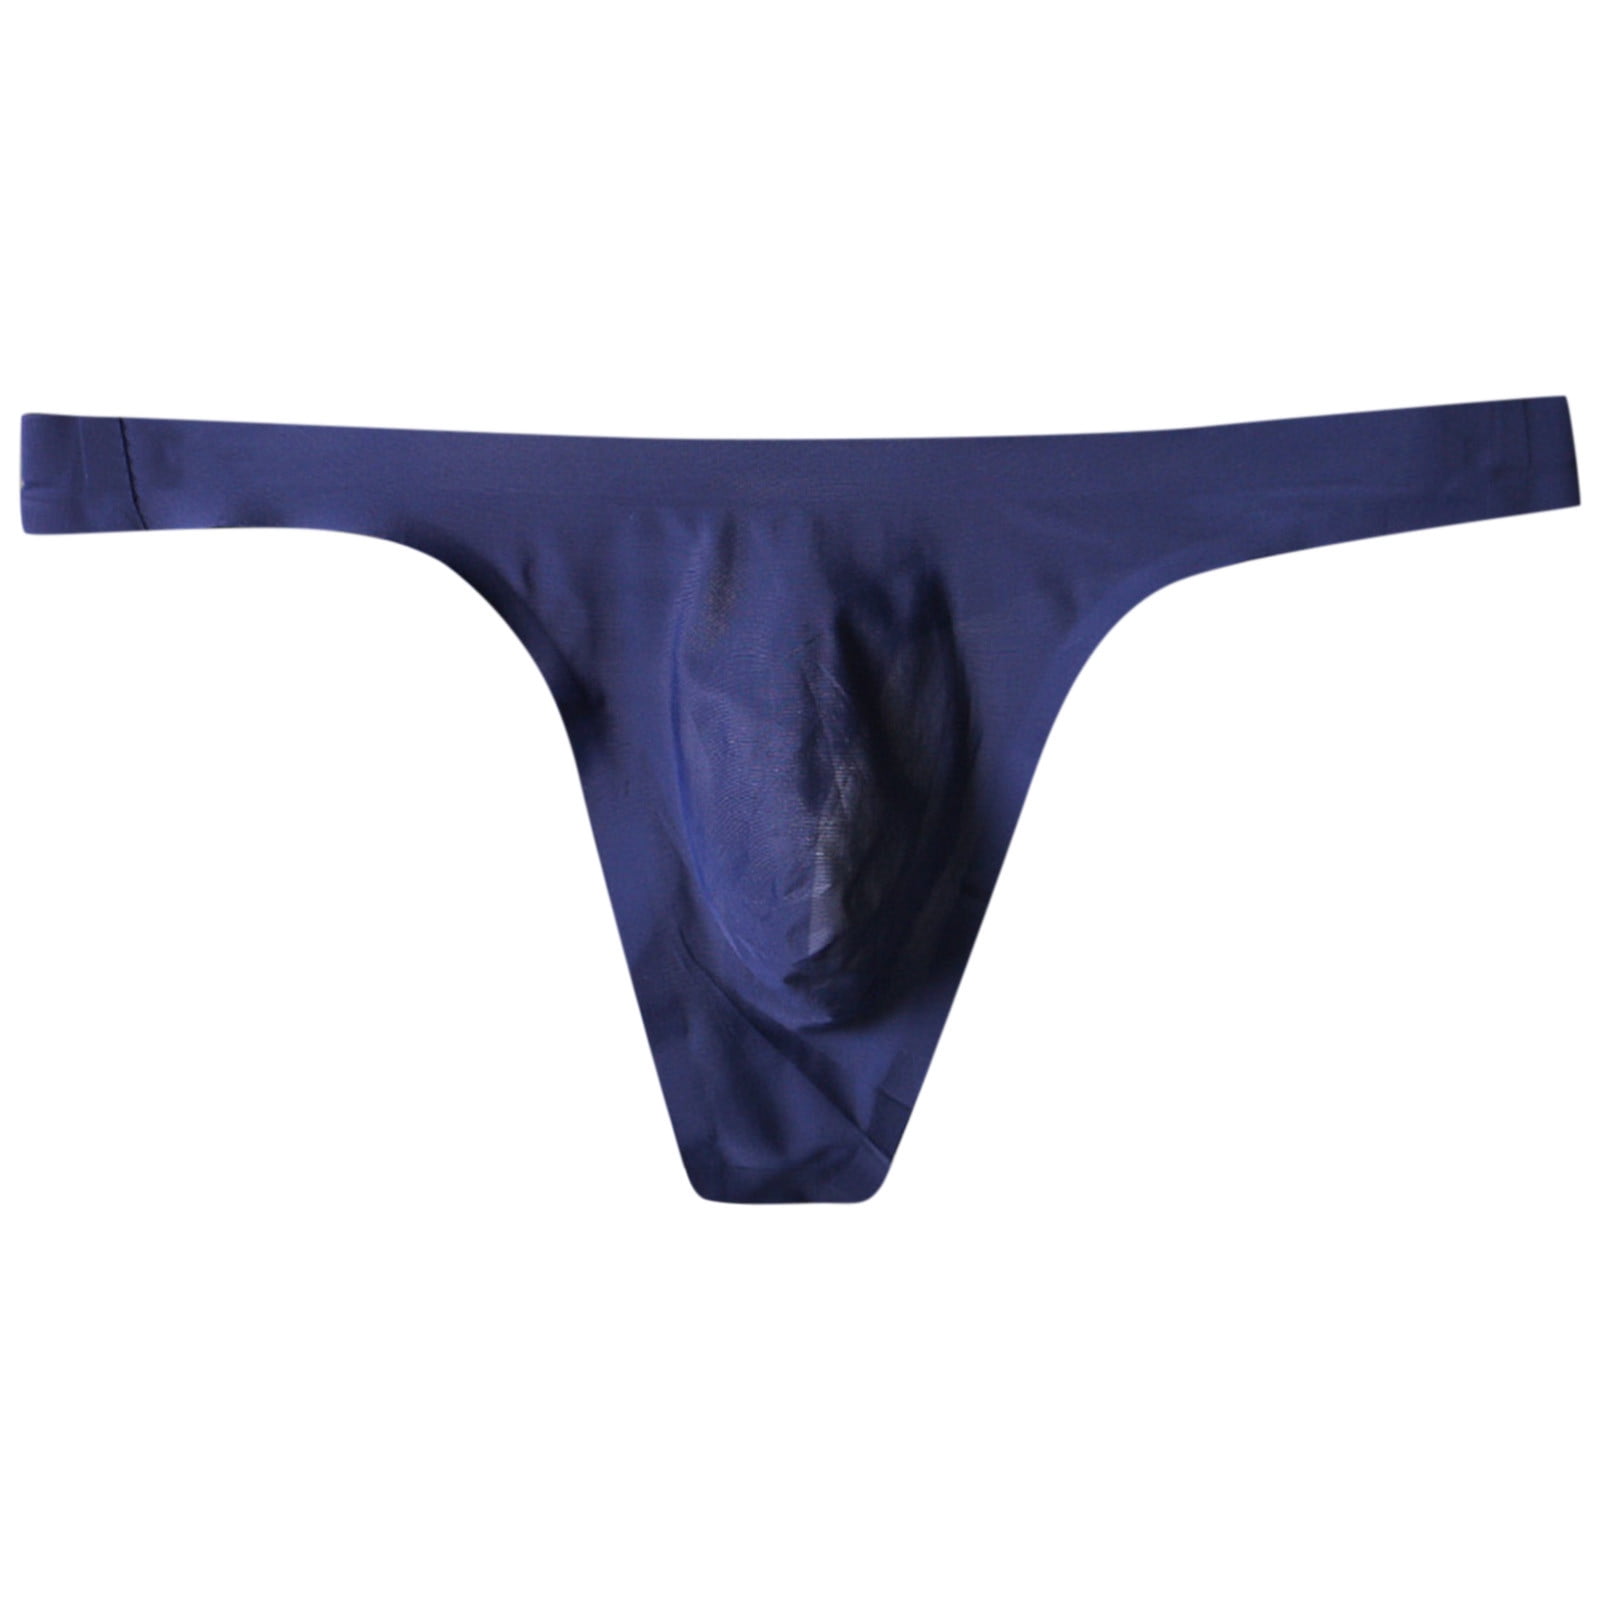 zuwimk Mens Underwear,Men's Cheeky Thong Underwear Mini Cheek Boxer Briefs Z -Blue,3XL 